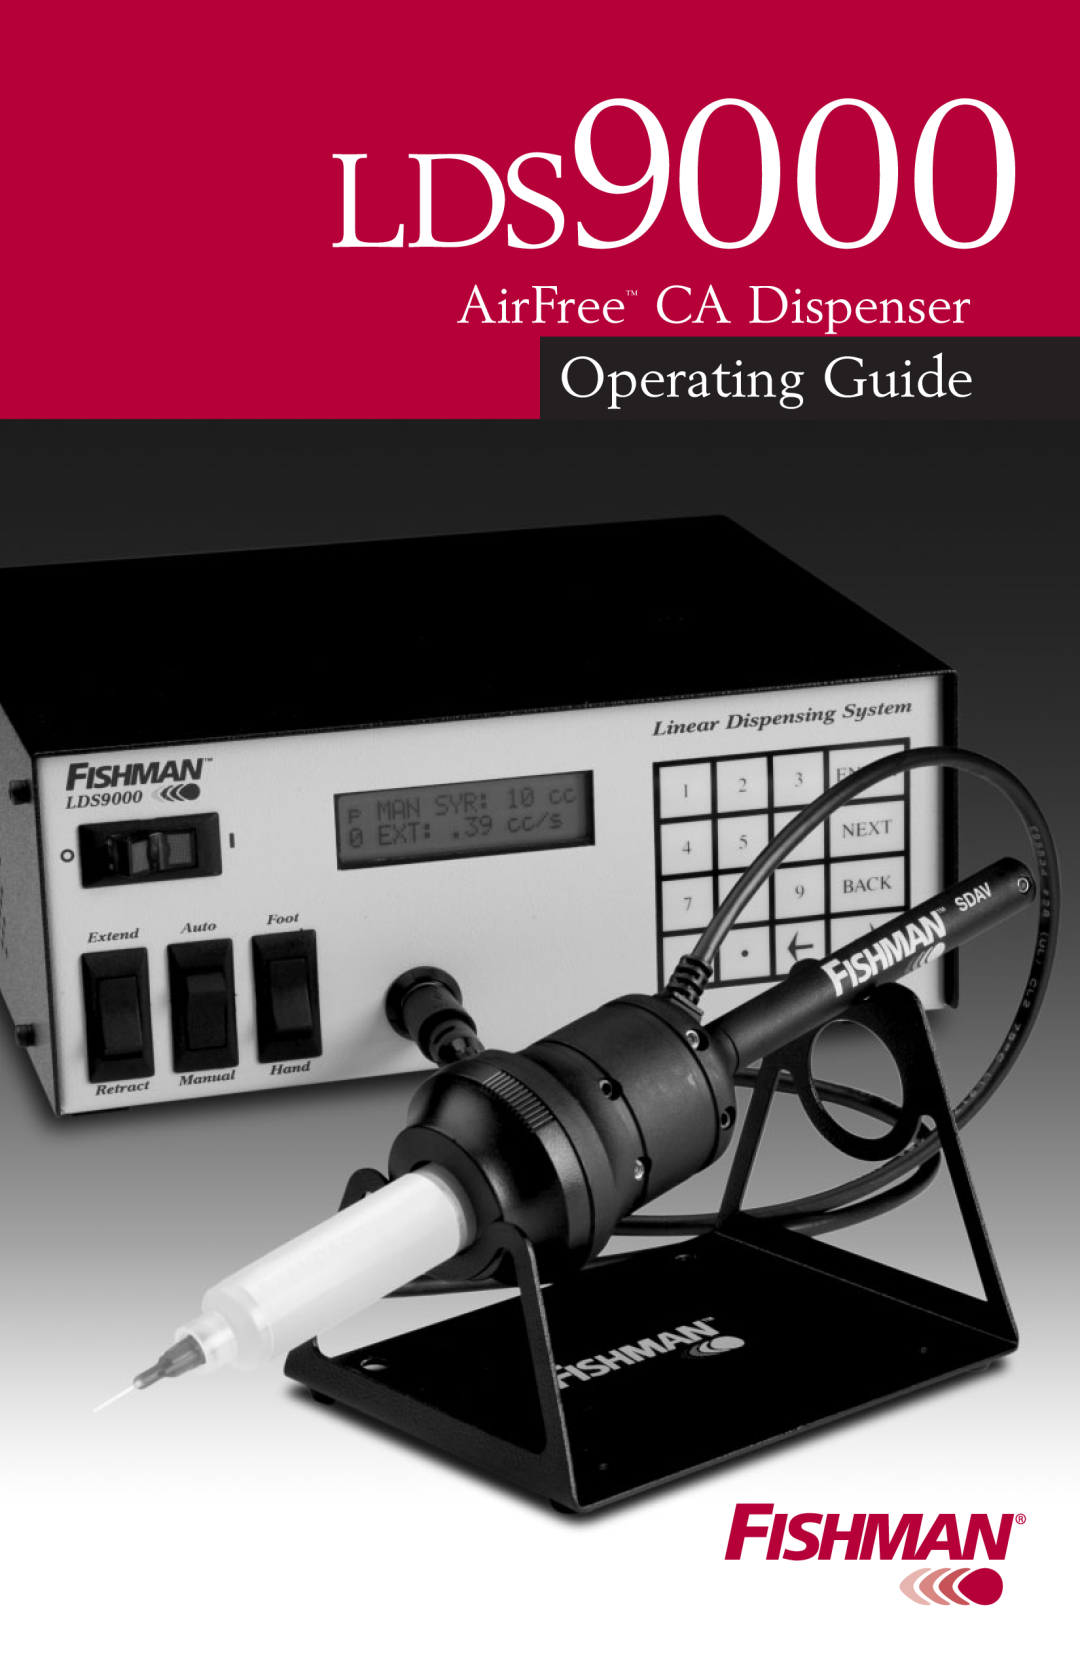 Fishman LDS9000 manual Operating Guide, AirFreeAirPulse CA Dispensser 